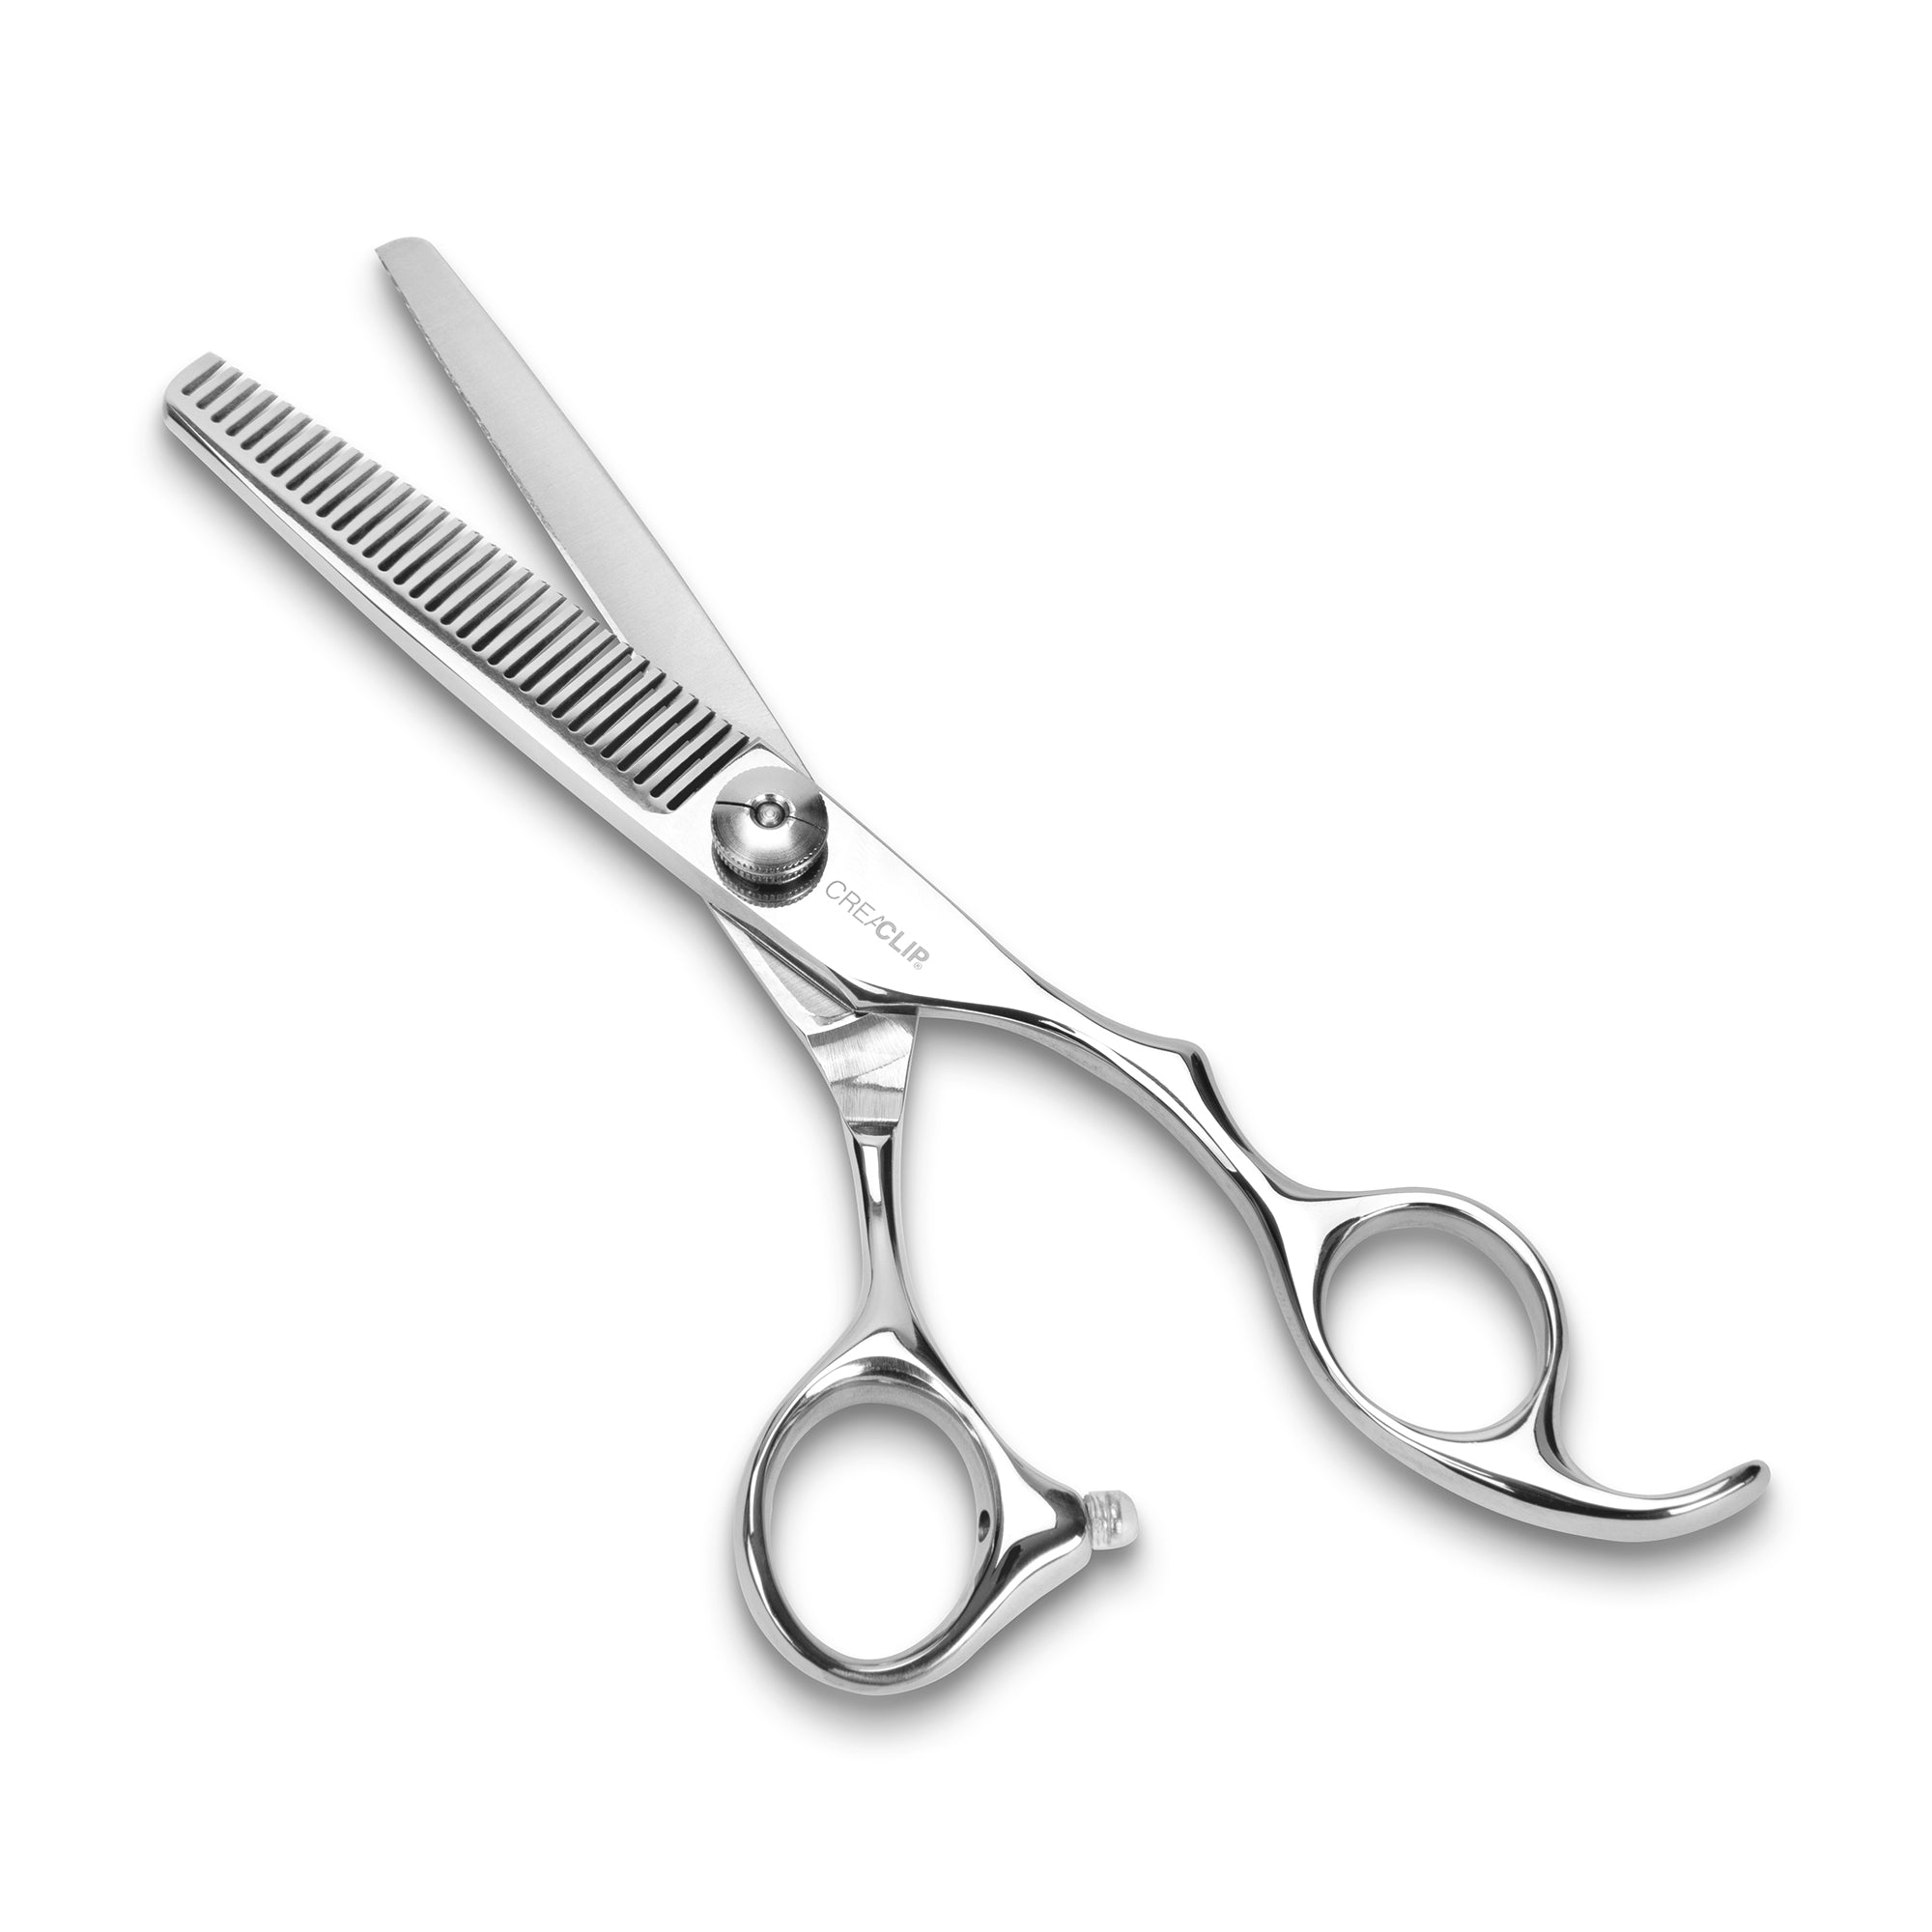 CreaClip Premium Professional Thinning Scissors